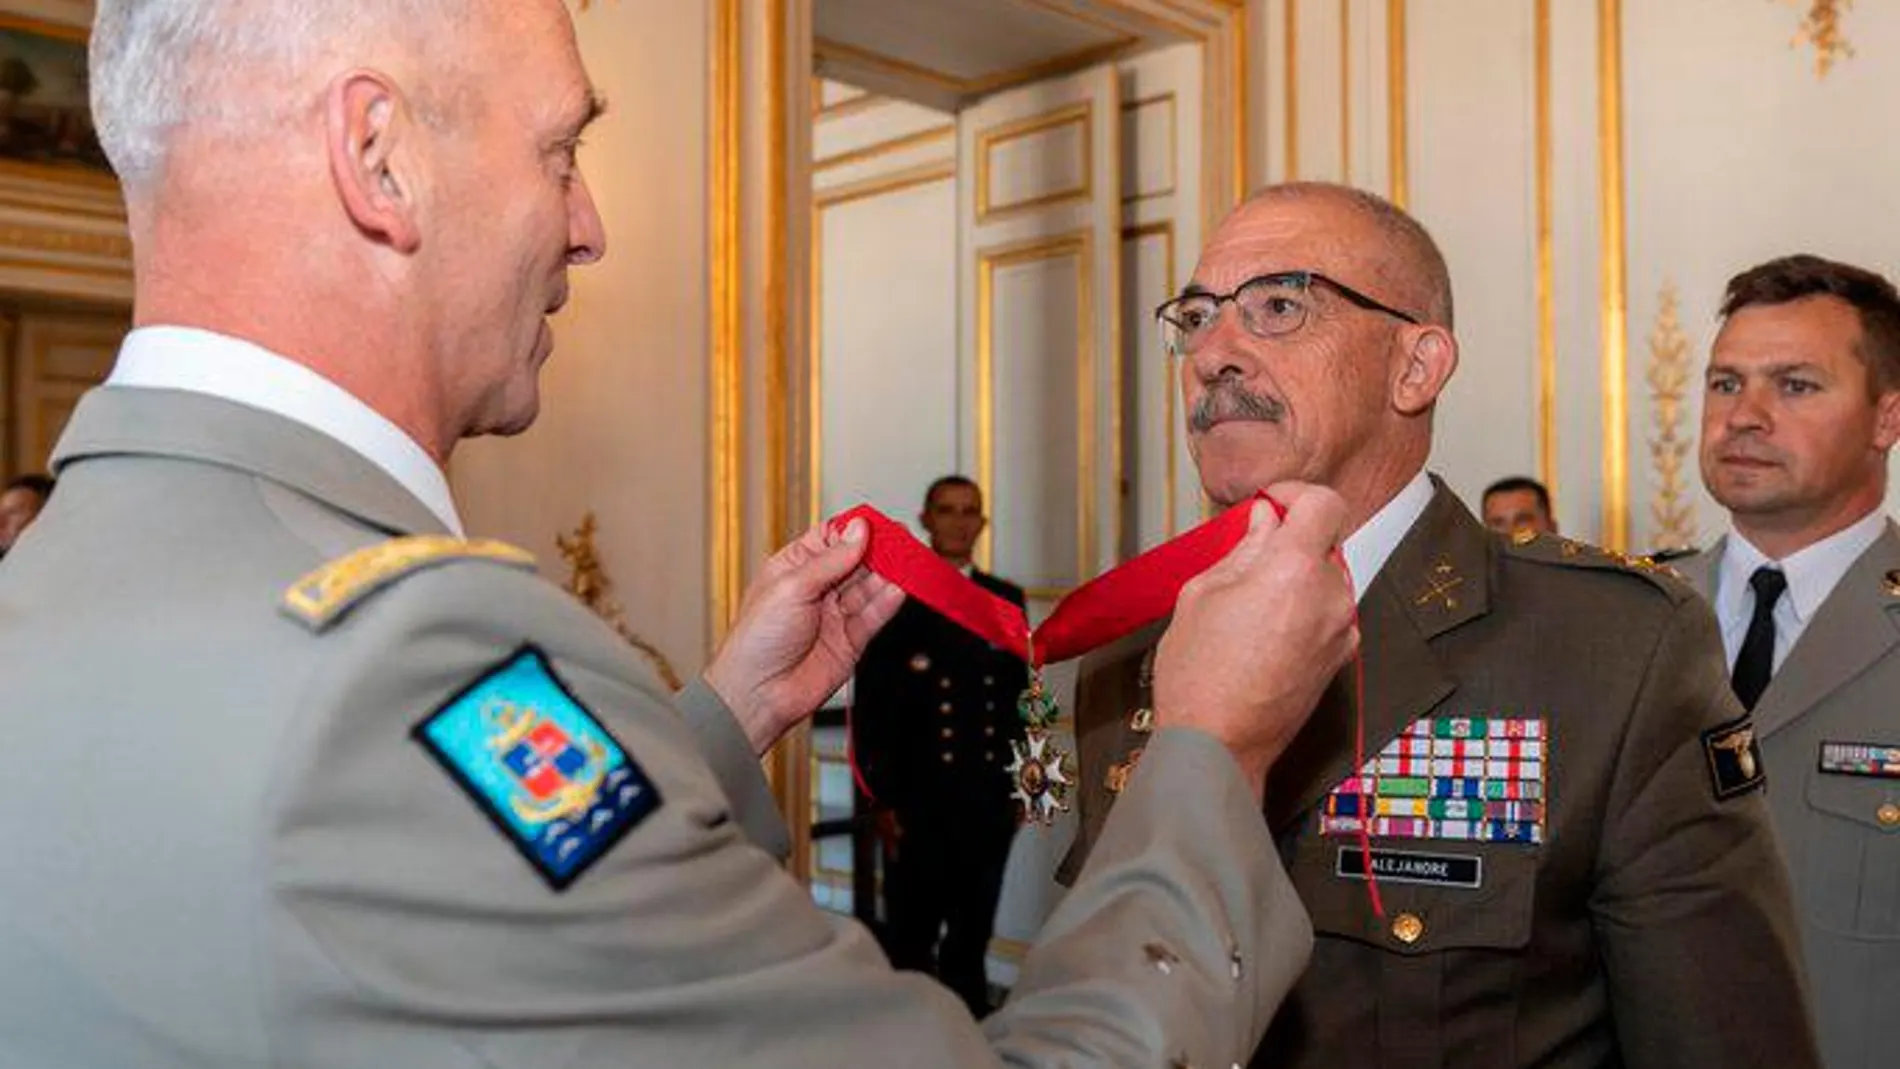 El JEMAD recibe la Legión de Honor de manos de su homólogo francés